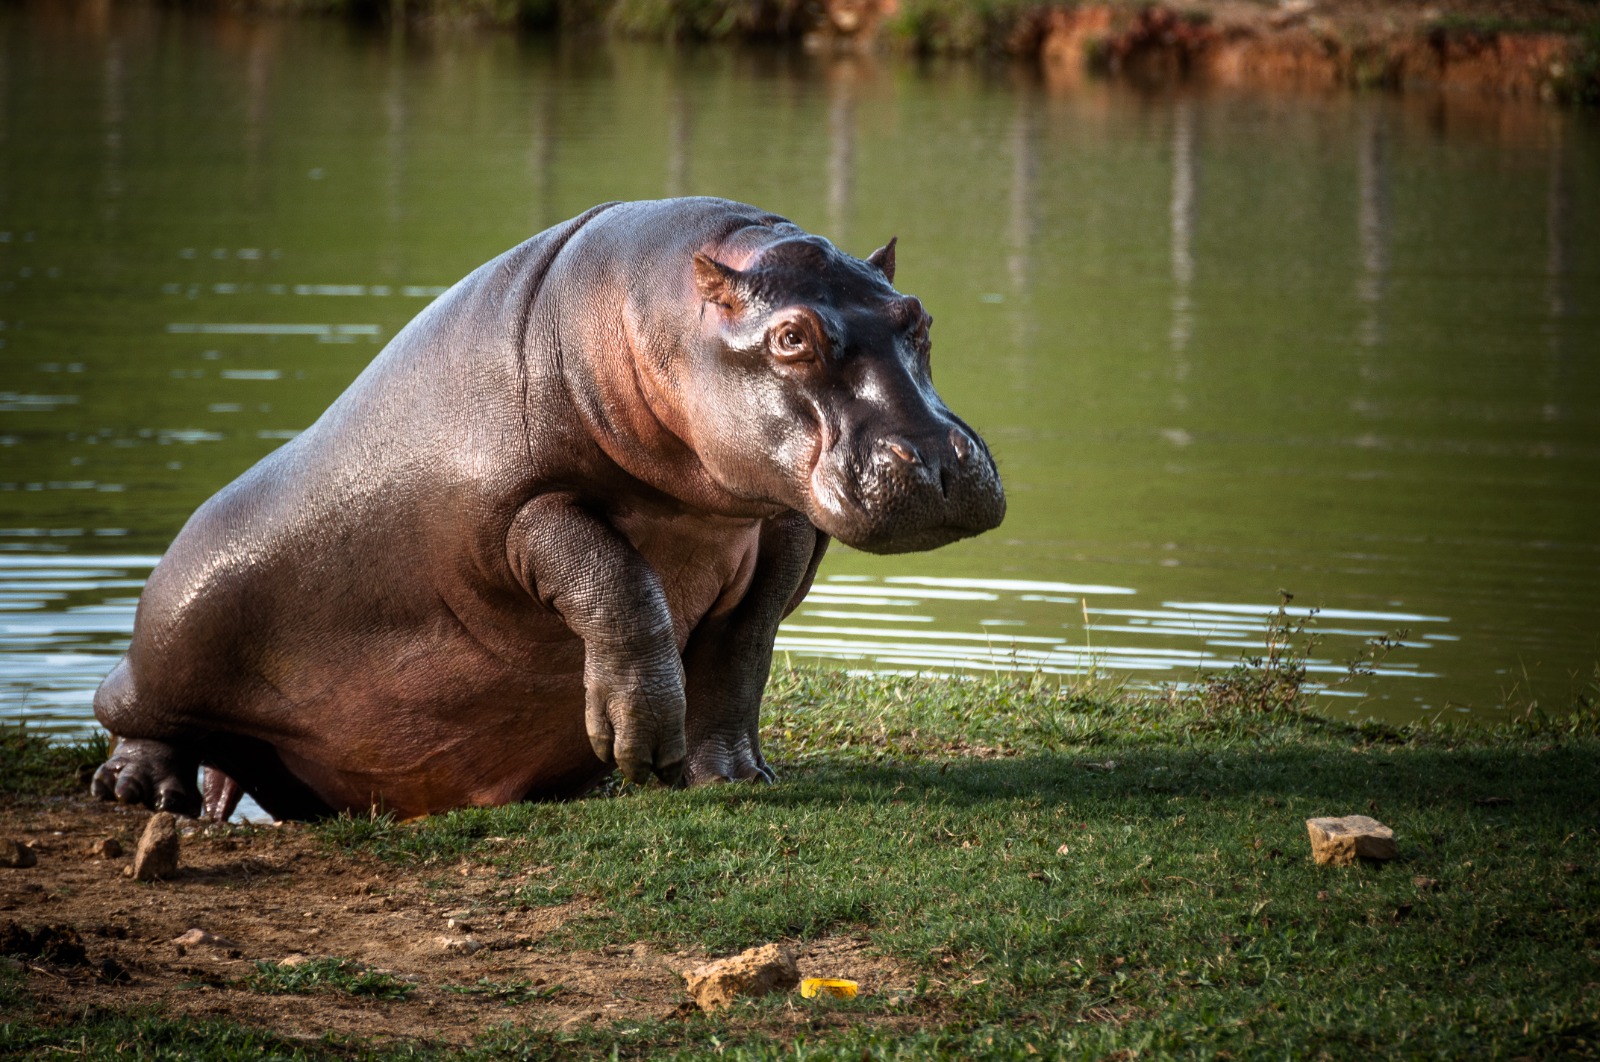 Inicia fase de esterilización de hipopótamos en Colombia 1